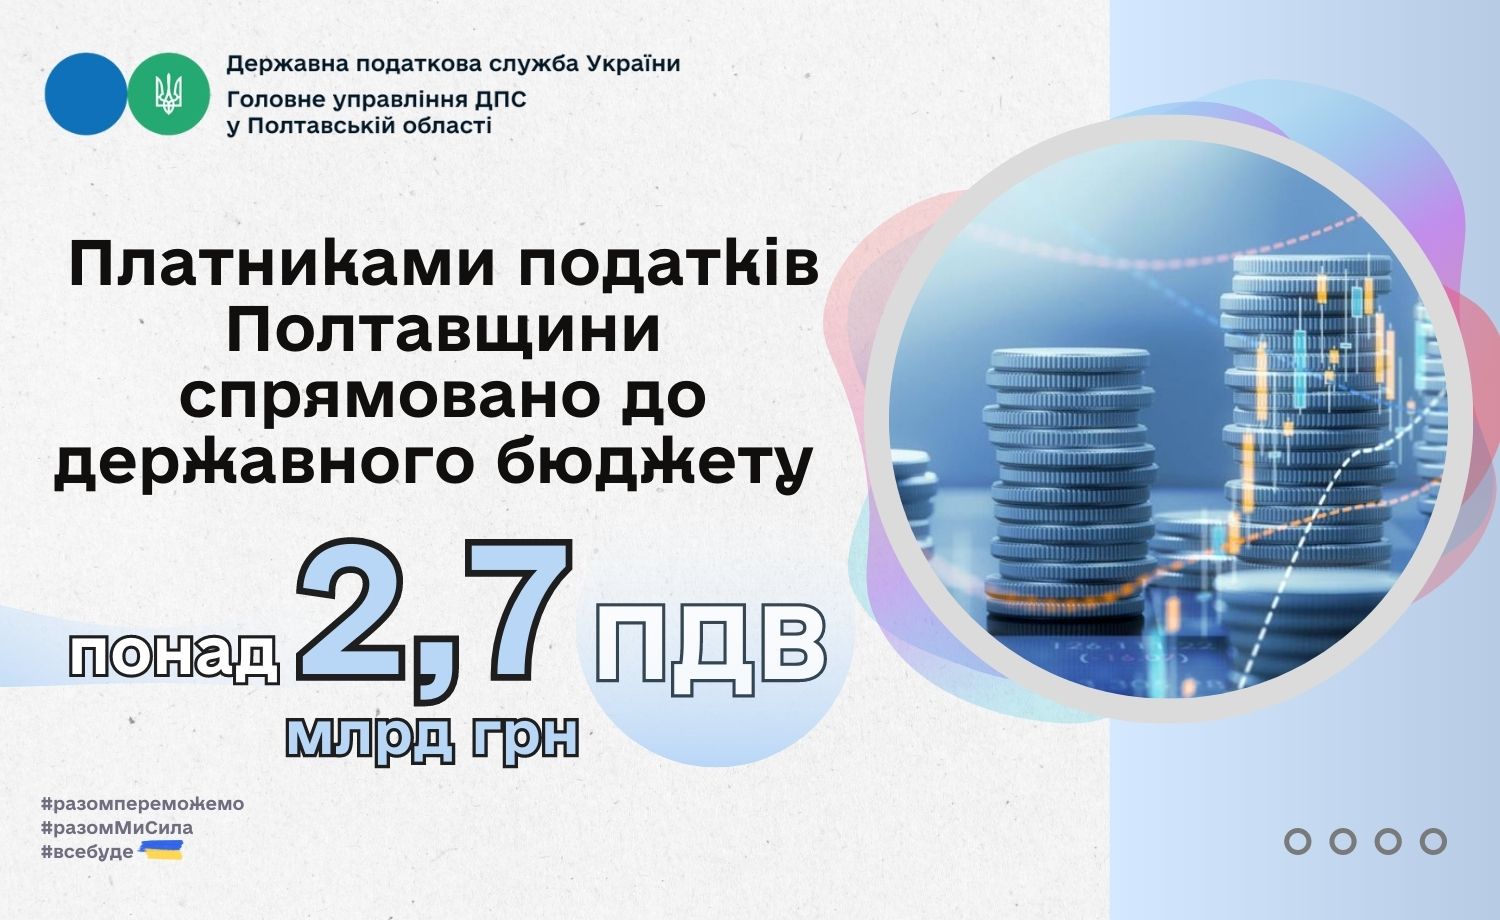 Платники Полтавщини спрямували до державного бюджету понад 2,7 млрд грн ПДВ